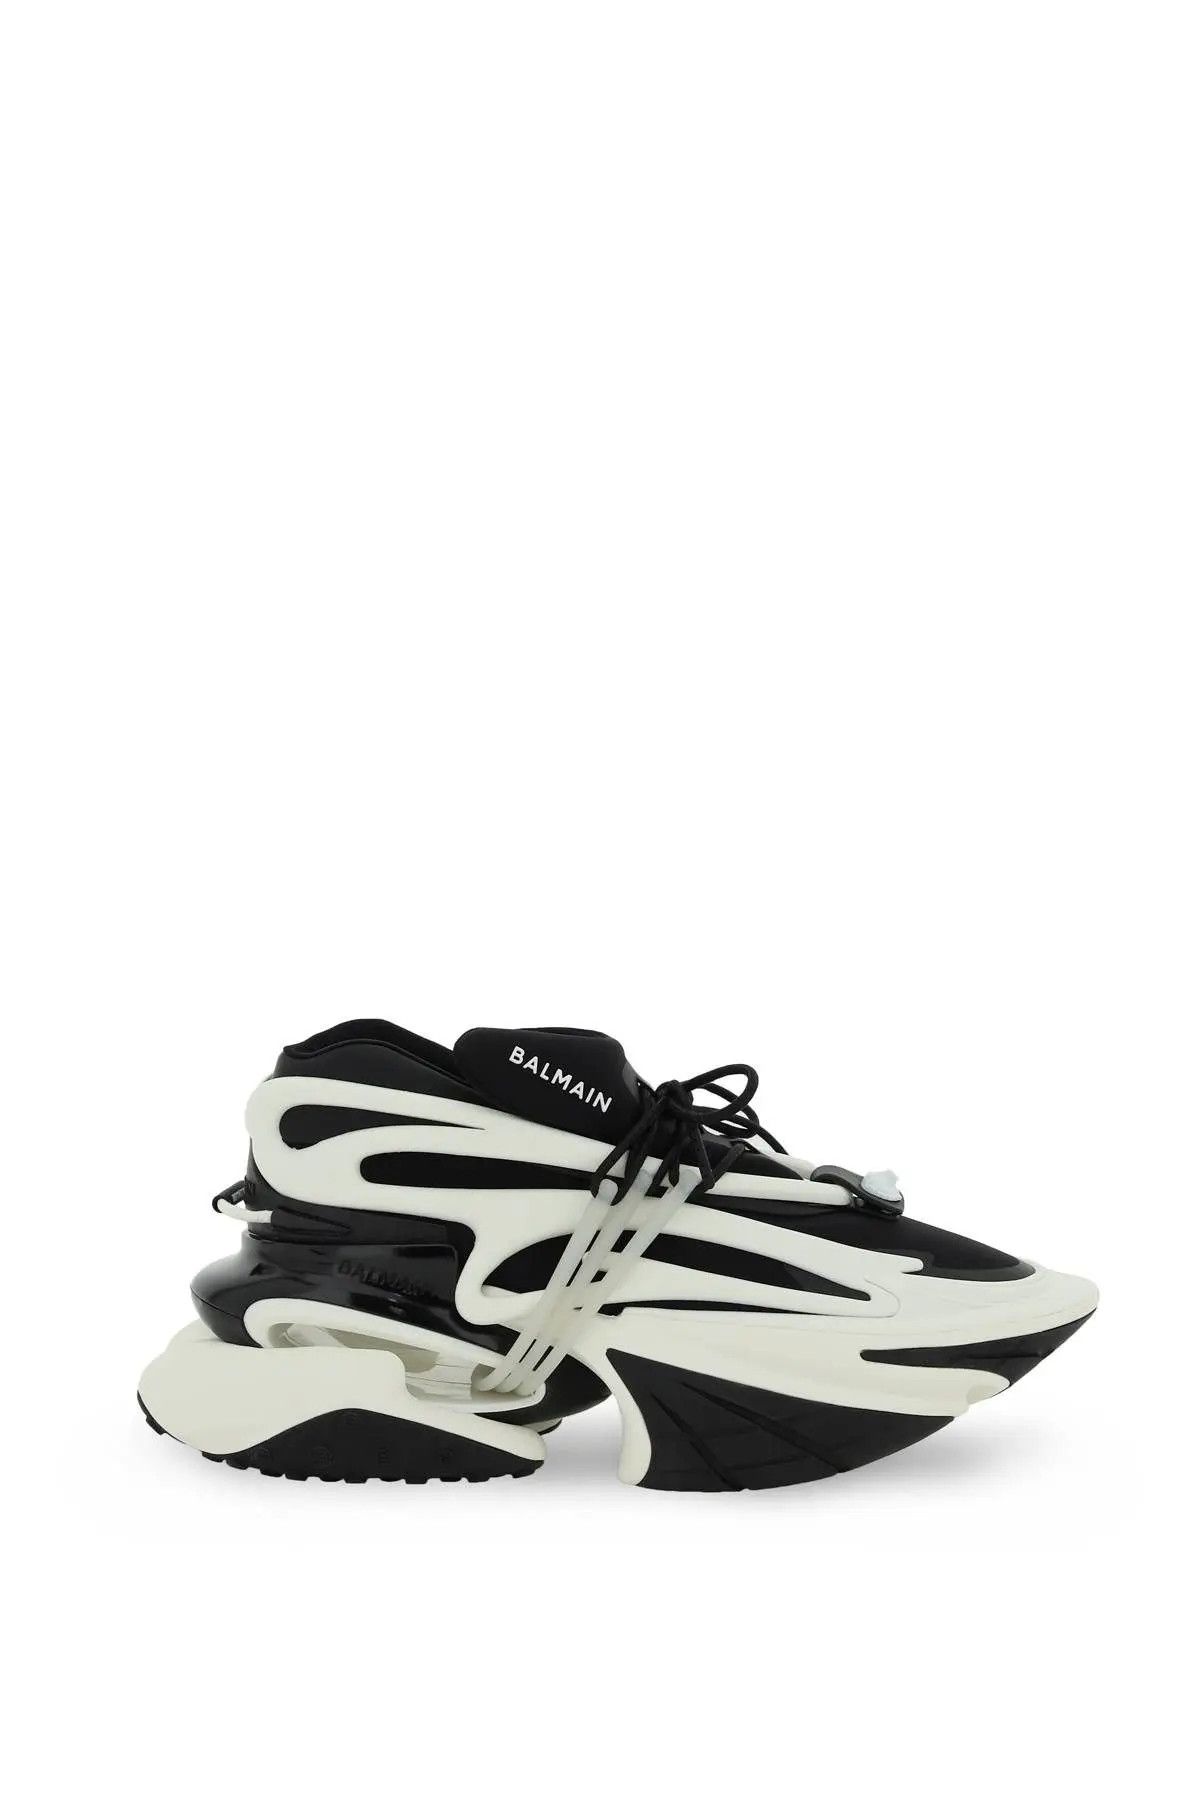 Balmain o1s22i1n0923 Unicorn Sneakers in White Black | Grailed